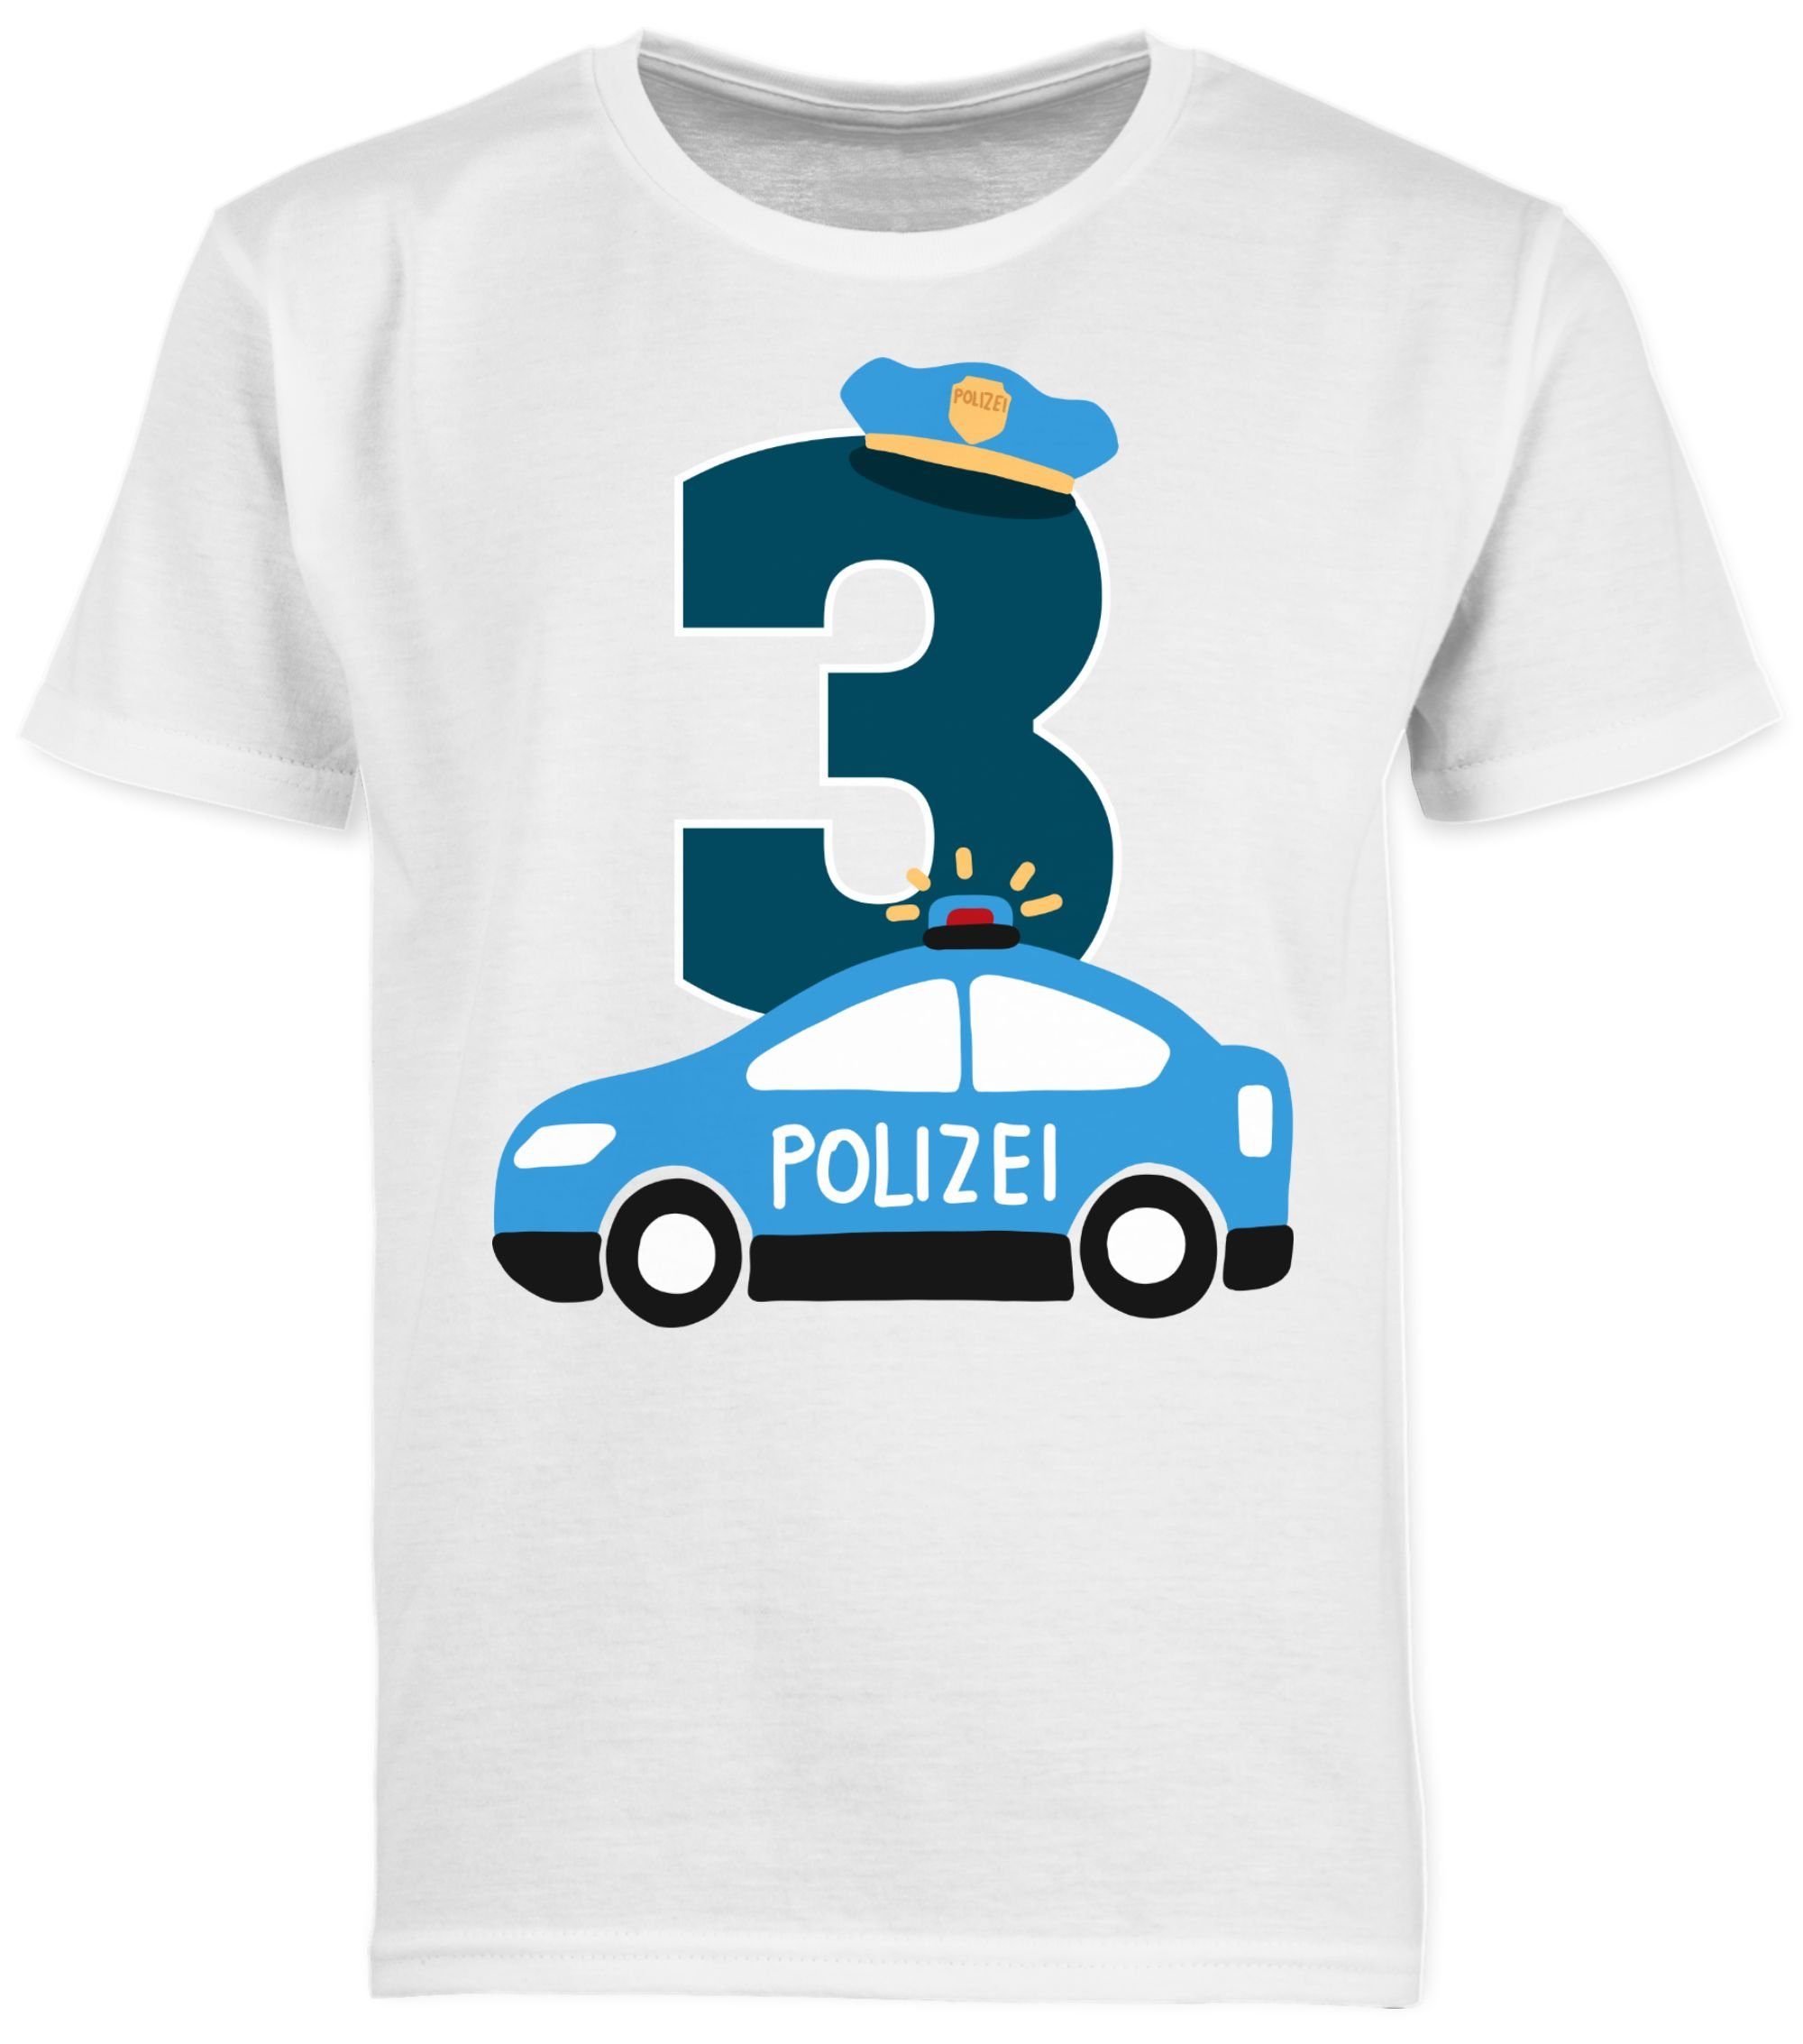 Kinder Kids (Gr. 92 - 146) Shirtracer T-Shirt Polizei Dritter - 3. Geburtstag - Jungen Kinder T-Shirt